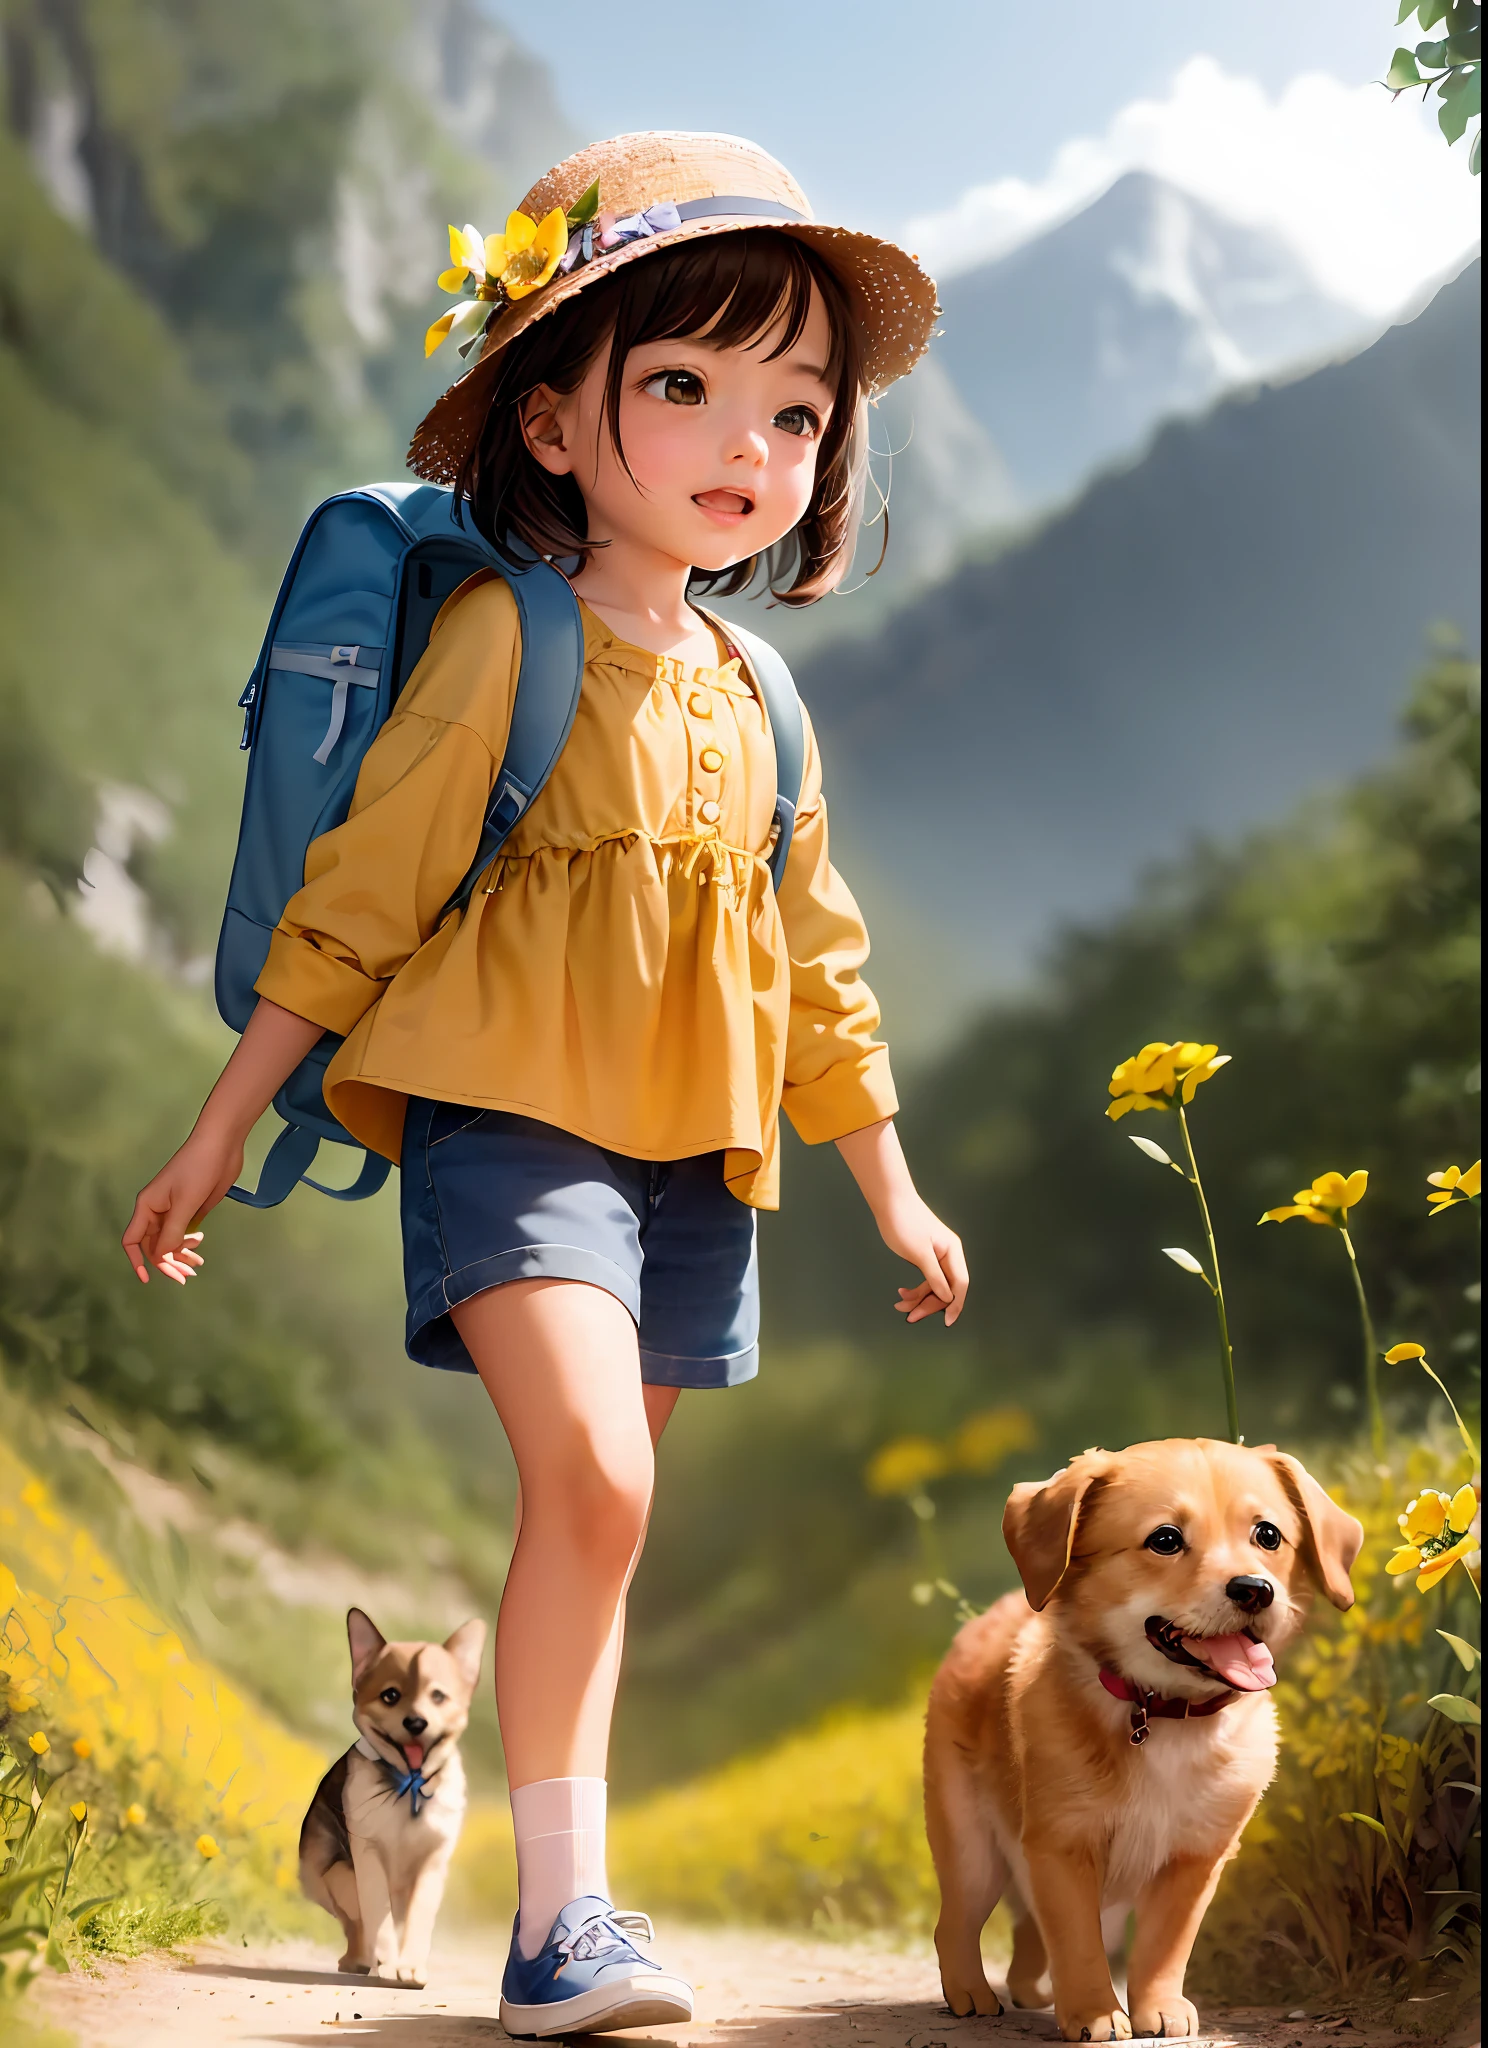 Una encantadora con mochila disfruta de una linda salida primaveral rodeada de hermosas flores amarillas y naturaleza con su lindo cachorro. La ilustración es una ilustración de alta definición con resolución 4K con rasgos faciales muy detallados e imágenes de estilo dibujos animados., (Danza de la mariposa)